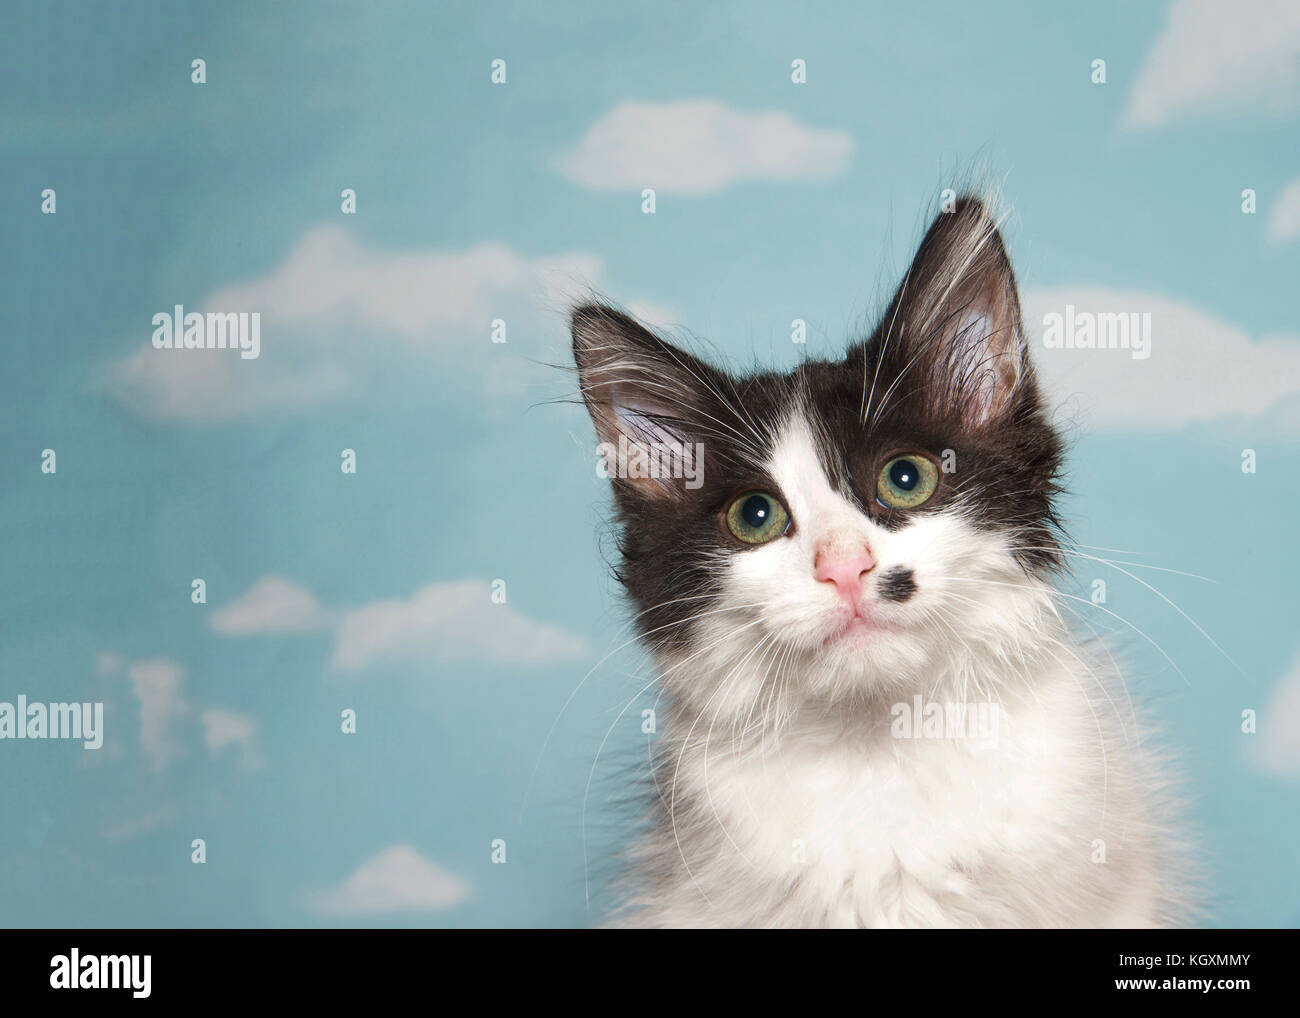 Portrait d'un noir et blanc tabby kitten looking at viewer, tache noire sur la joue gauche comme marque de beauté. Fond bleu ciel avec des nuages. Copy space Banque D'Images